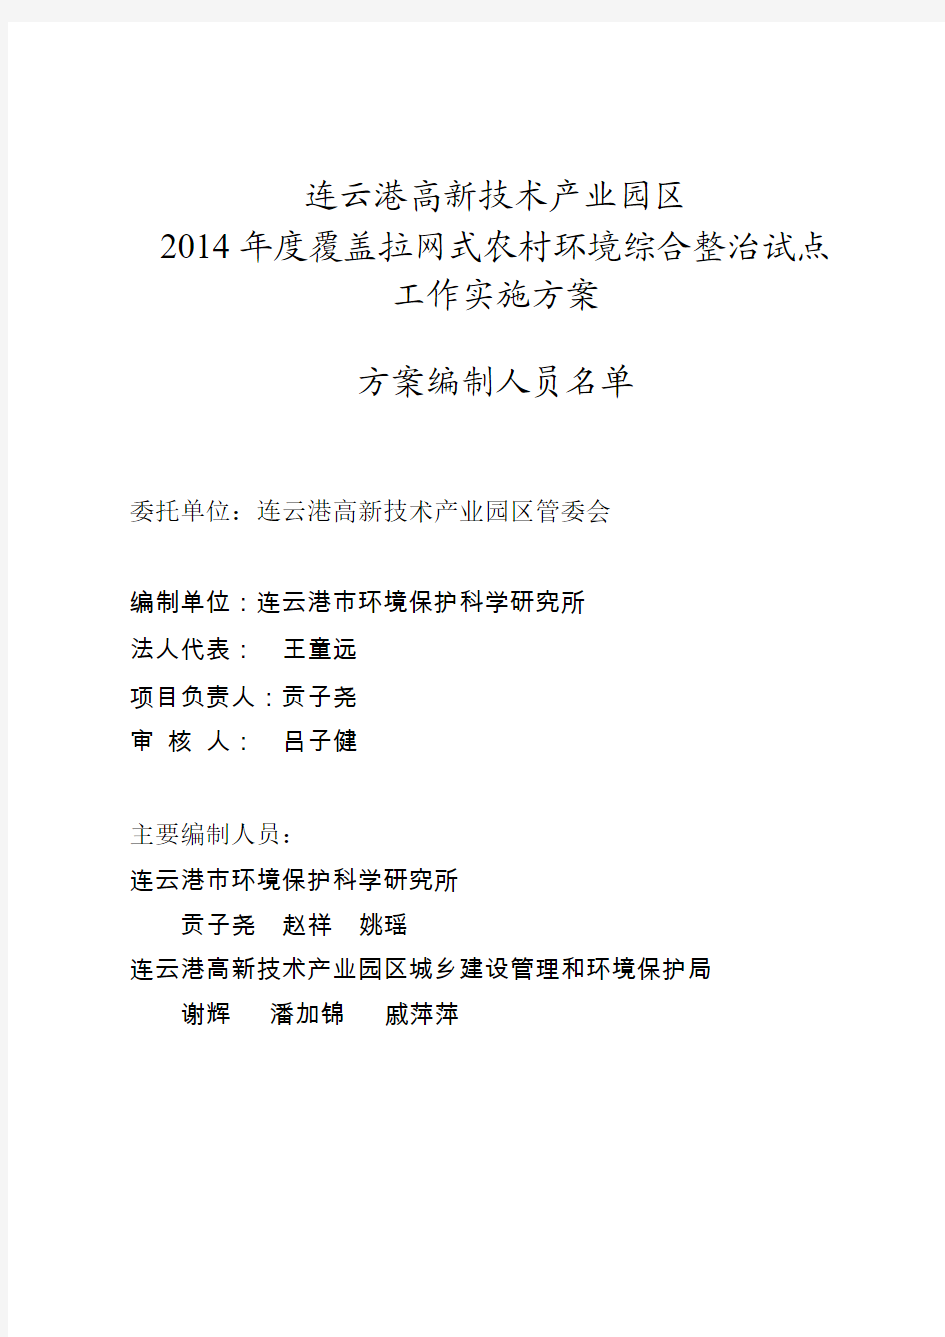 连云港高新技术产业园区2014年度覆盖拉网式农村环境综合整治试点工作实施方案(修改稿)10.28